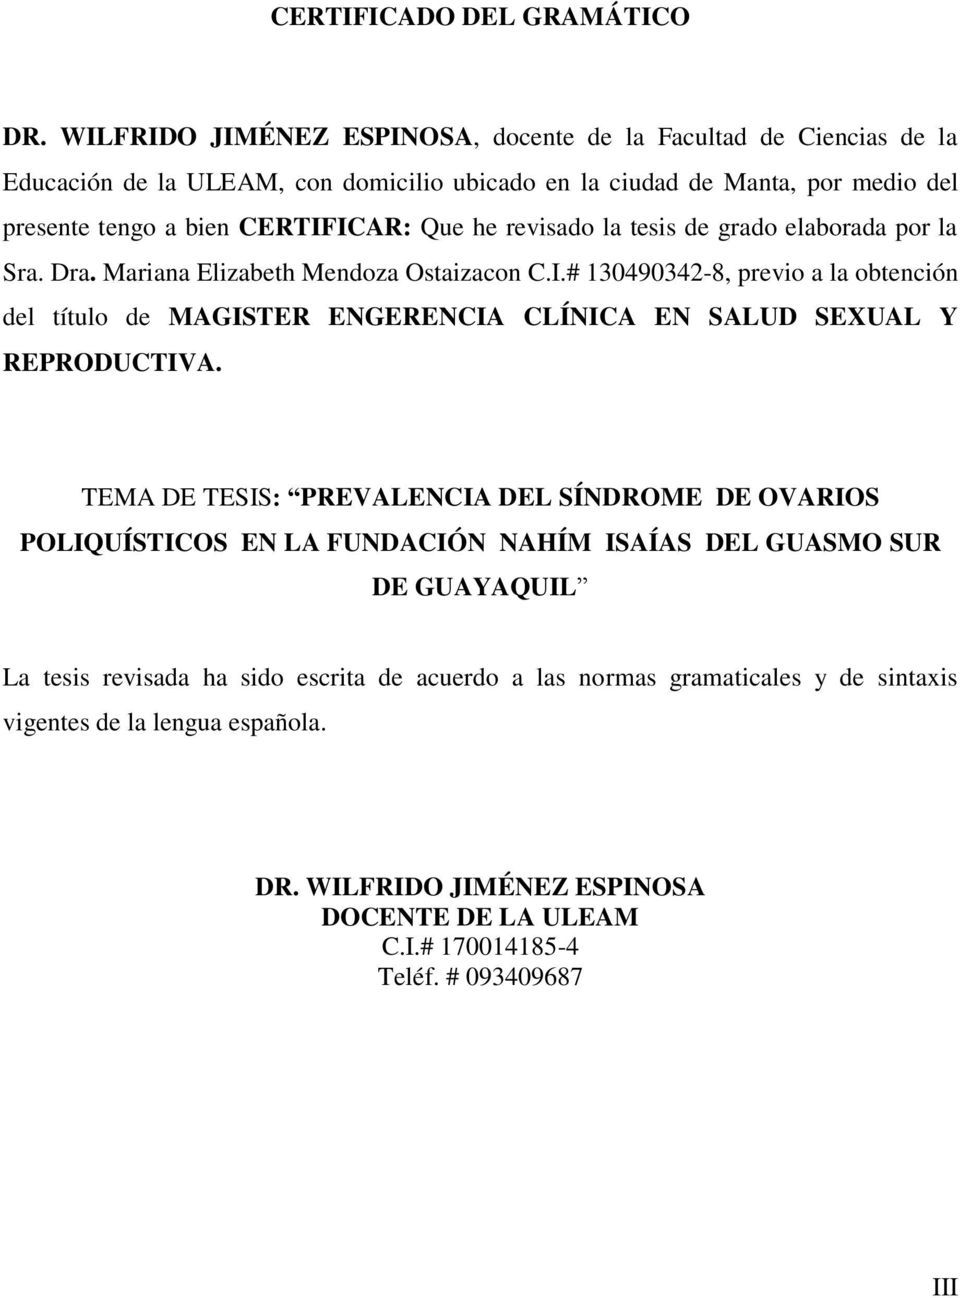 he revisado la tesis de grado elaborada por la Sra. Dra. Mariana Elizabeth Mendoza Ostaizacon C.I.